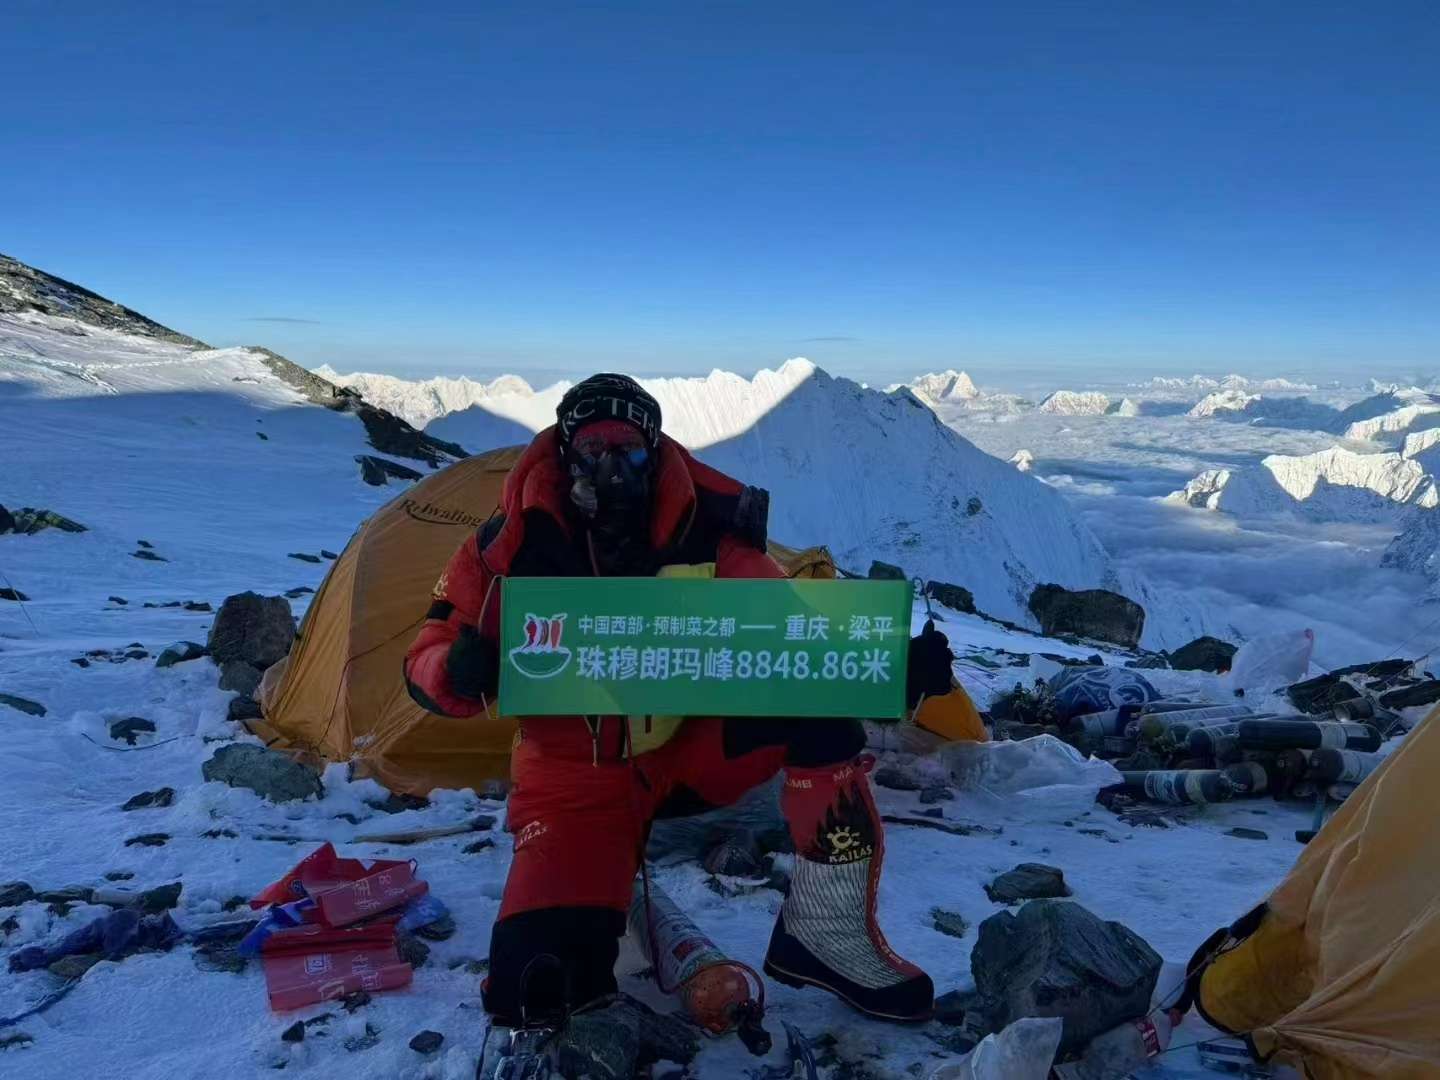 #重庆梁平 人首次登顶世界第一高峰#珠穆朗玛峰！ 在海拔8848.86米的世界之巅，祝中国西部预制菜之都#梁平越来越好 ！